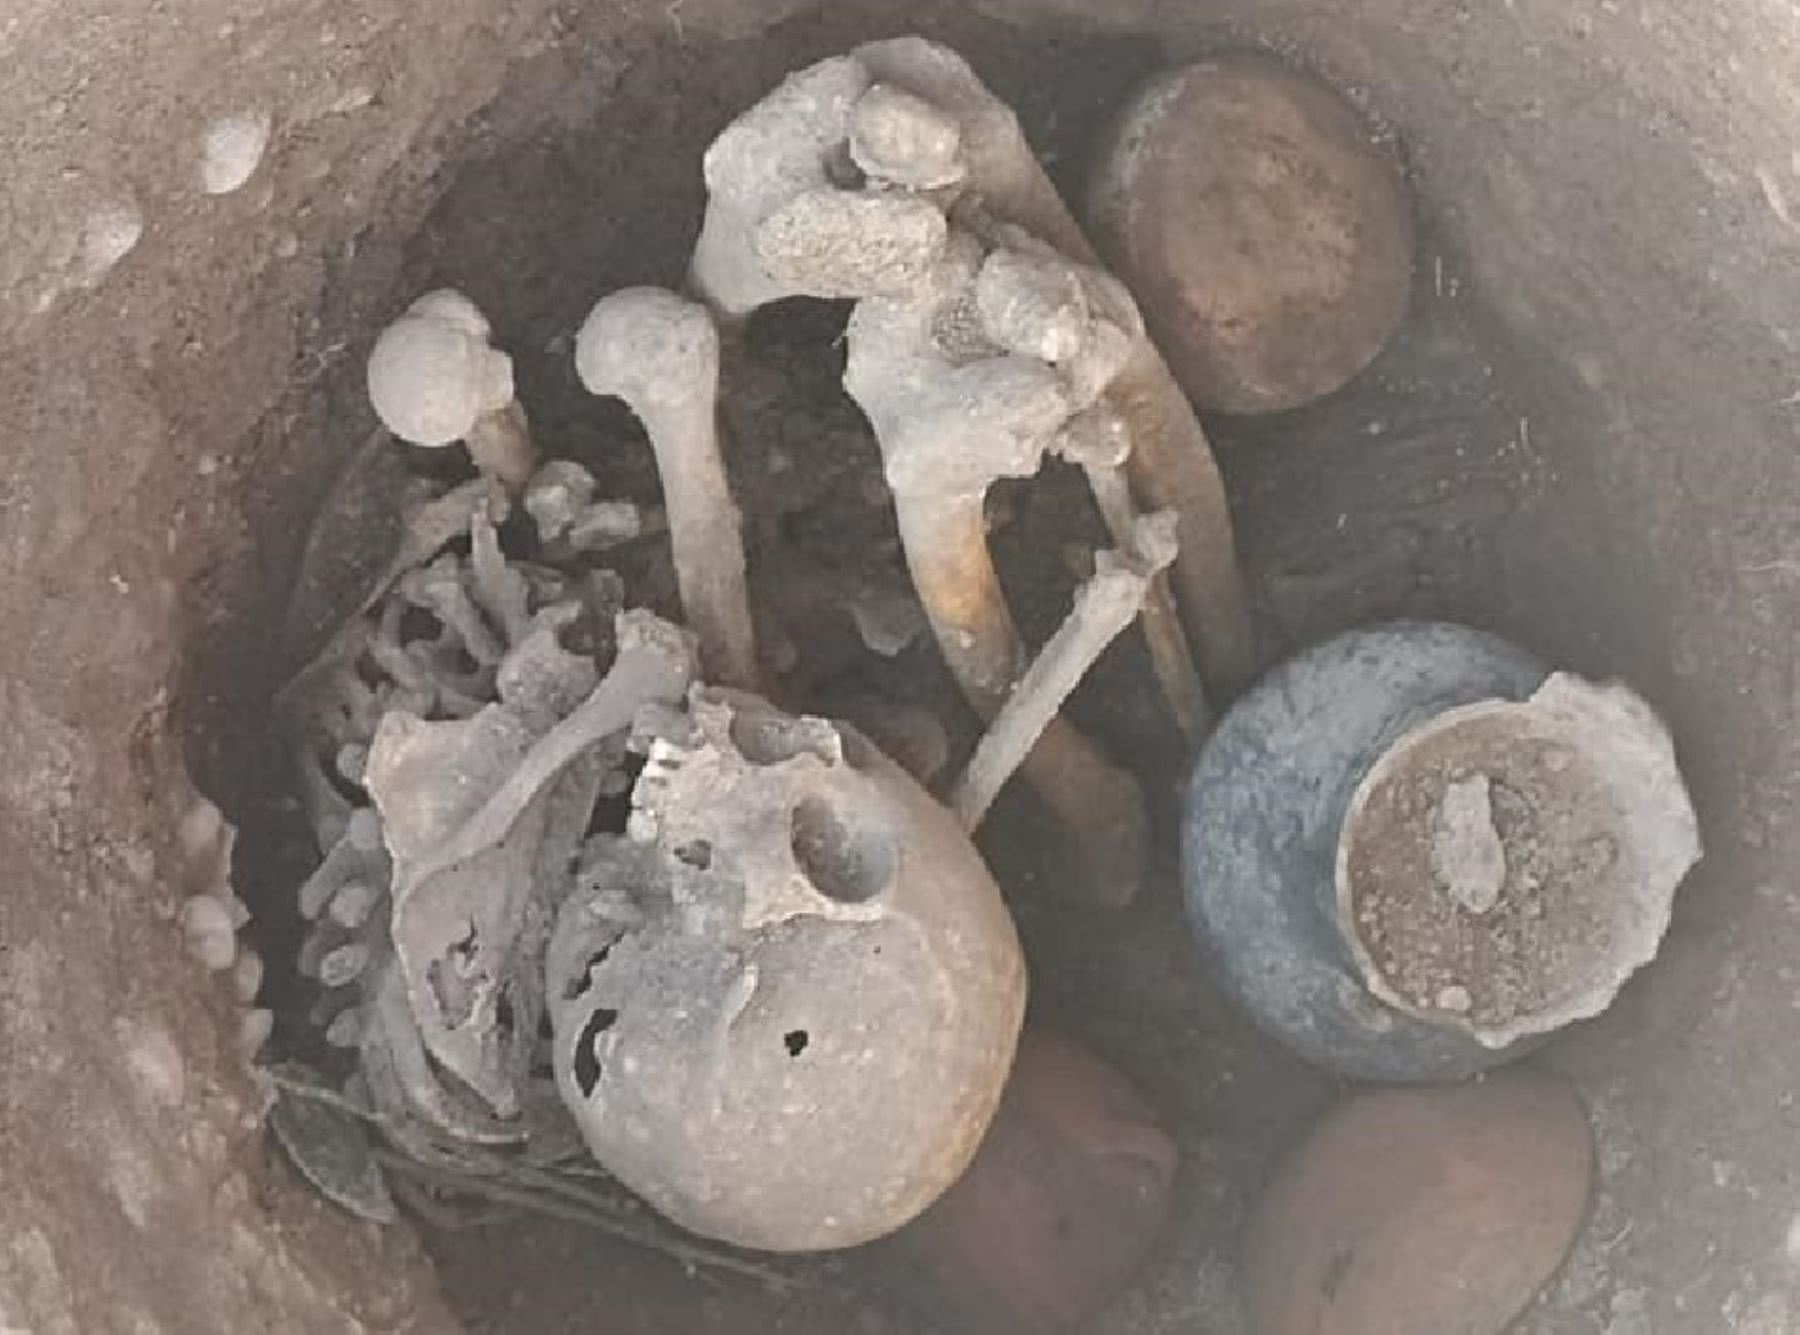 Investigación arqueológica de la Dirección de Cultura de Cusco evidenció 120 contextos funerarios hallados en la zona arqueológica K